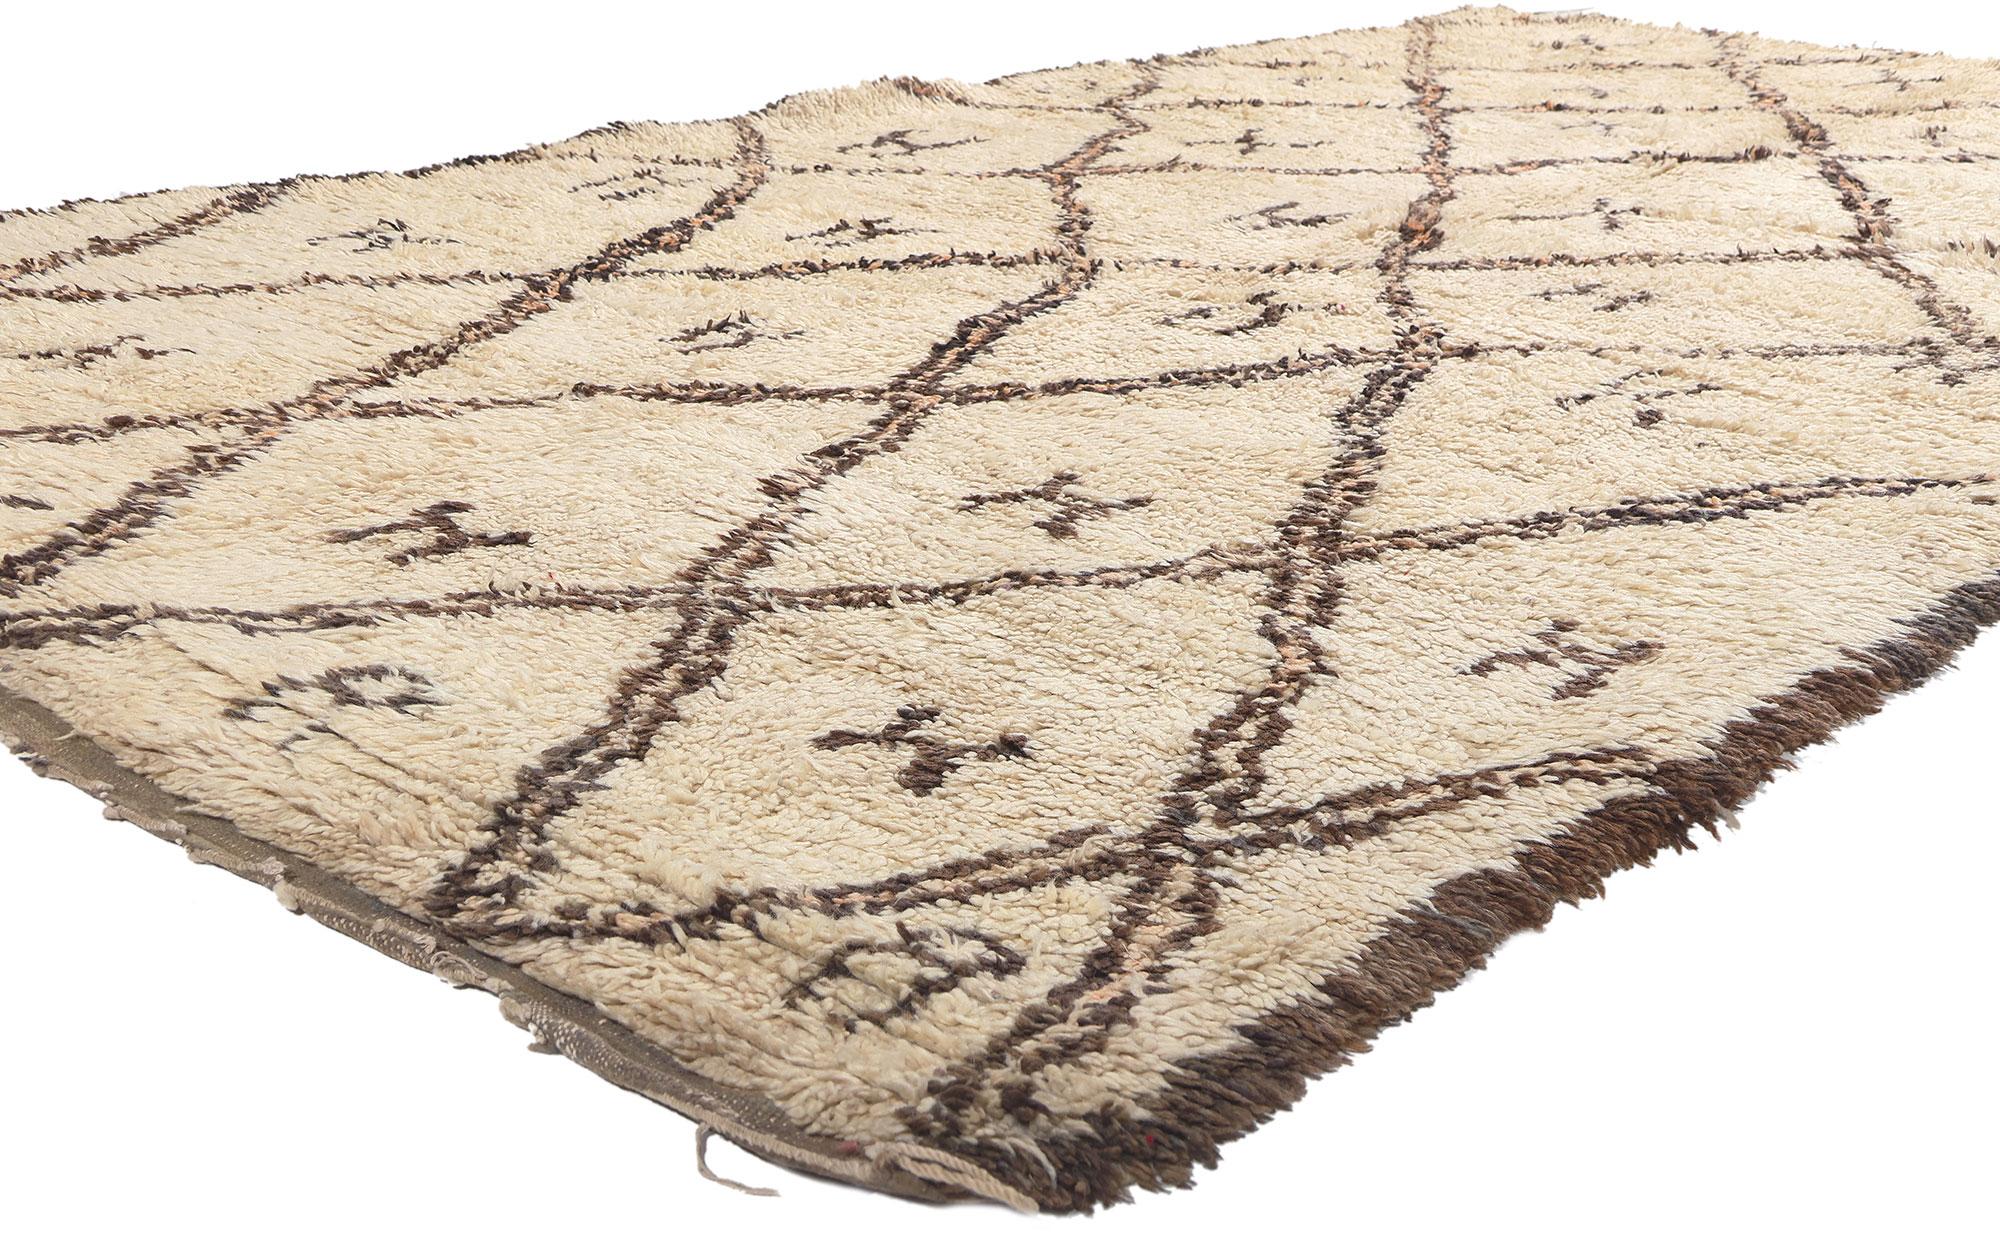 20656 Marokkanischer Vintage Beni Ourain Teppich, 06'00 x 11'09. Diese marokkanischen Teppiche stammen vom Beni Ourain-Stamm, der zur ethnischen Gruppe der Berber in Marokko gehört. Sie werden sorgfältig aus natürlicher, ungefärbter Schafwolle